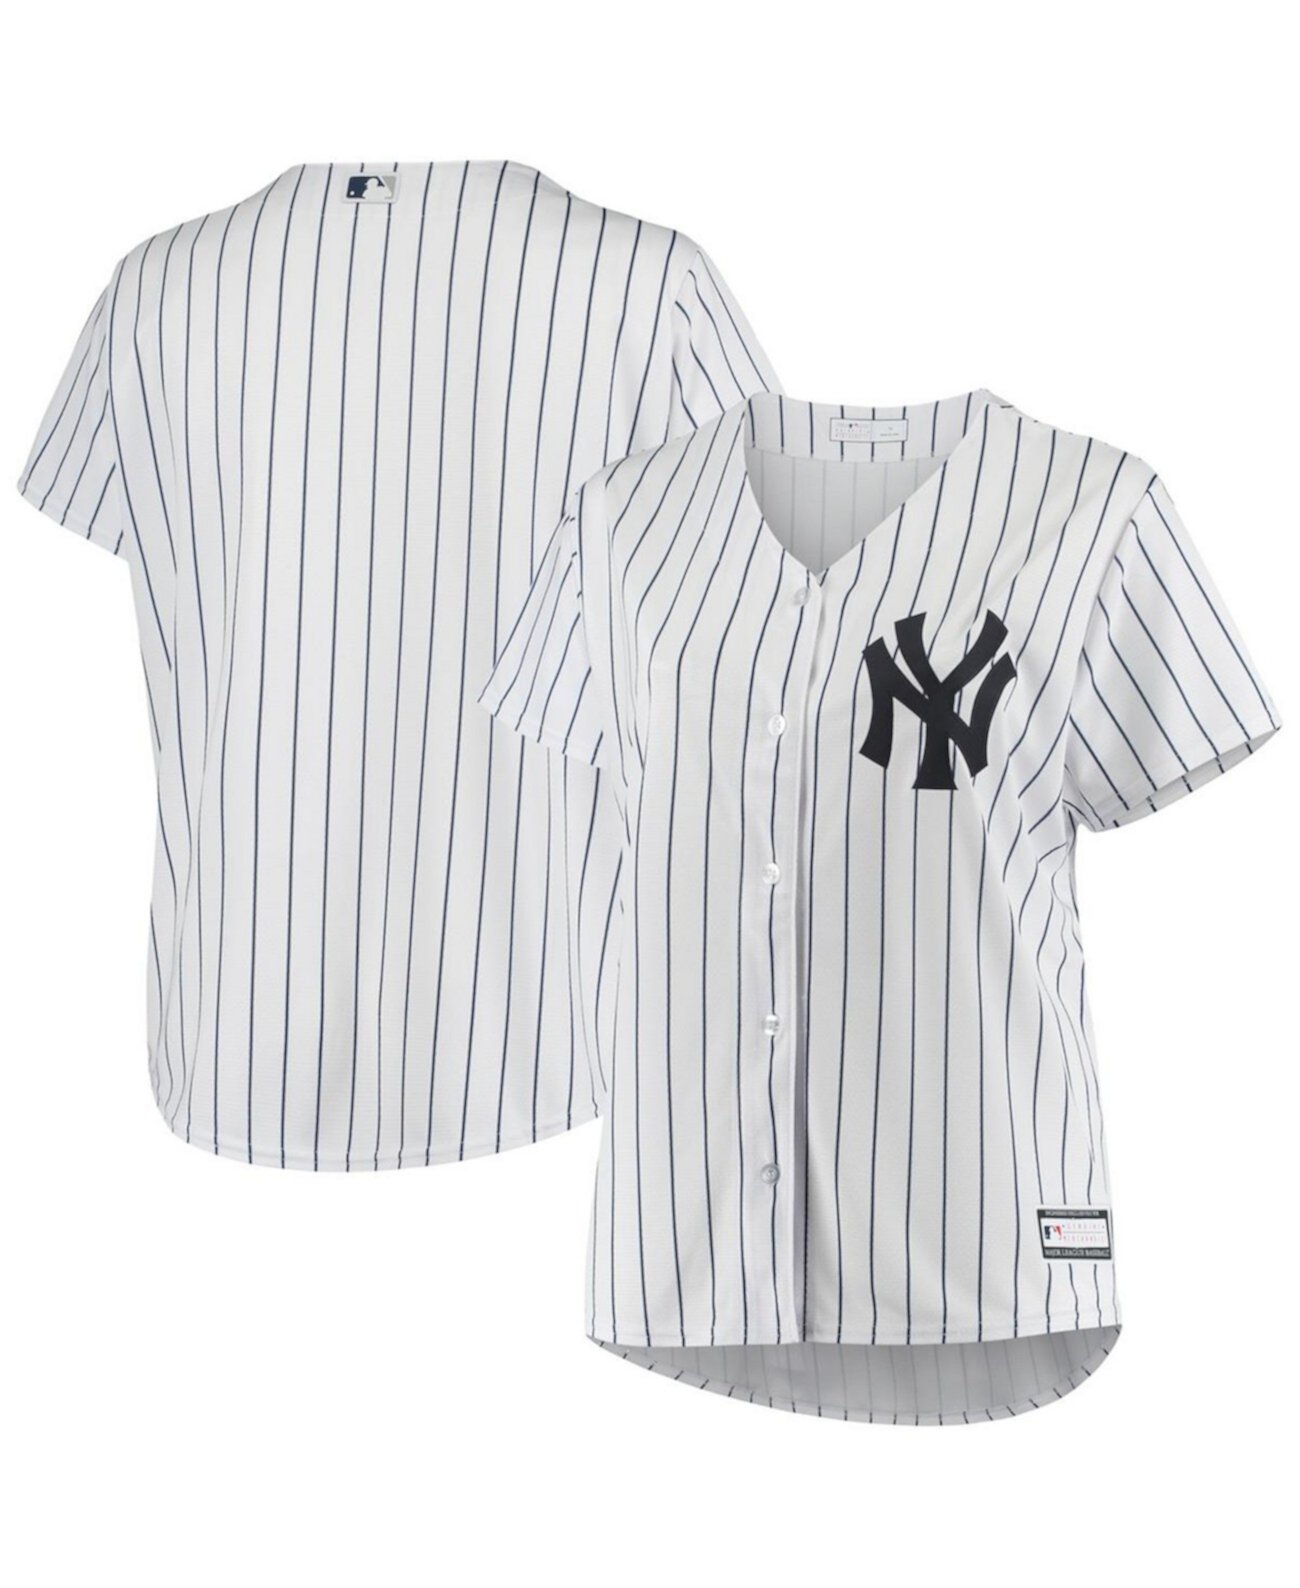 Женское белое джерси New York Yankees больших размеров, продезинфицированное, реплика команды Profile